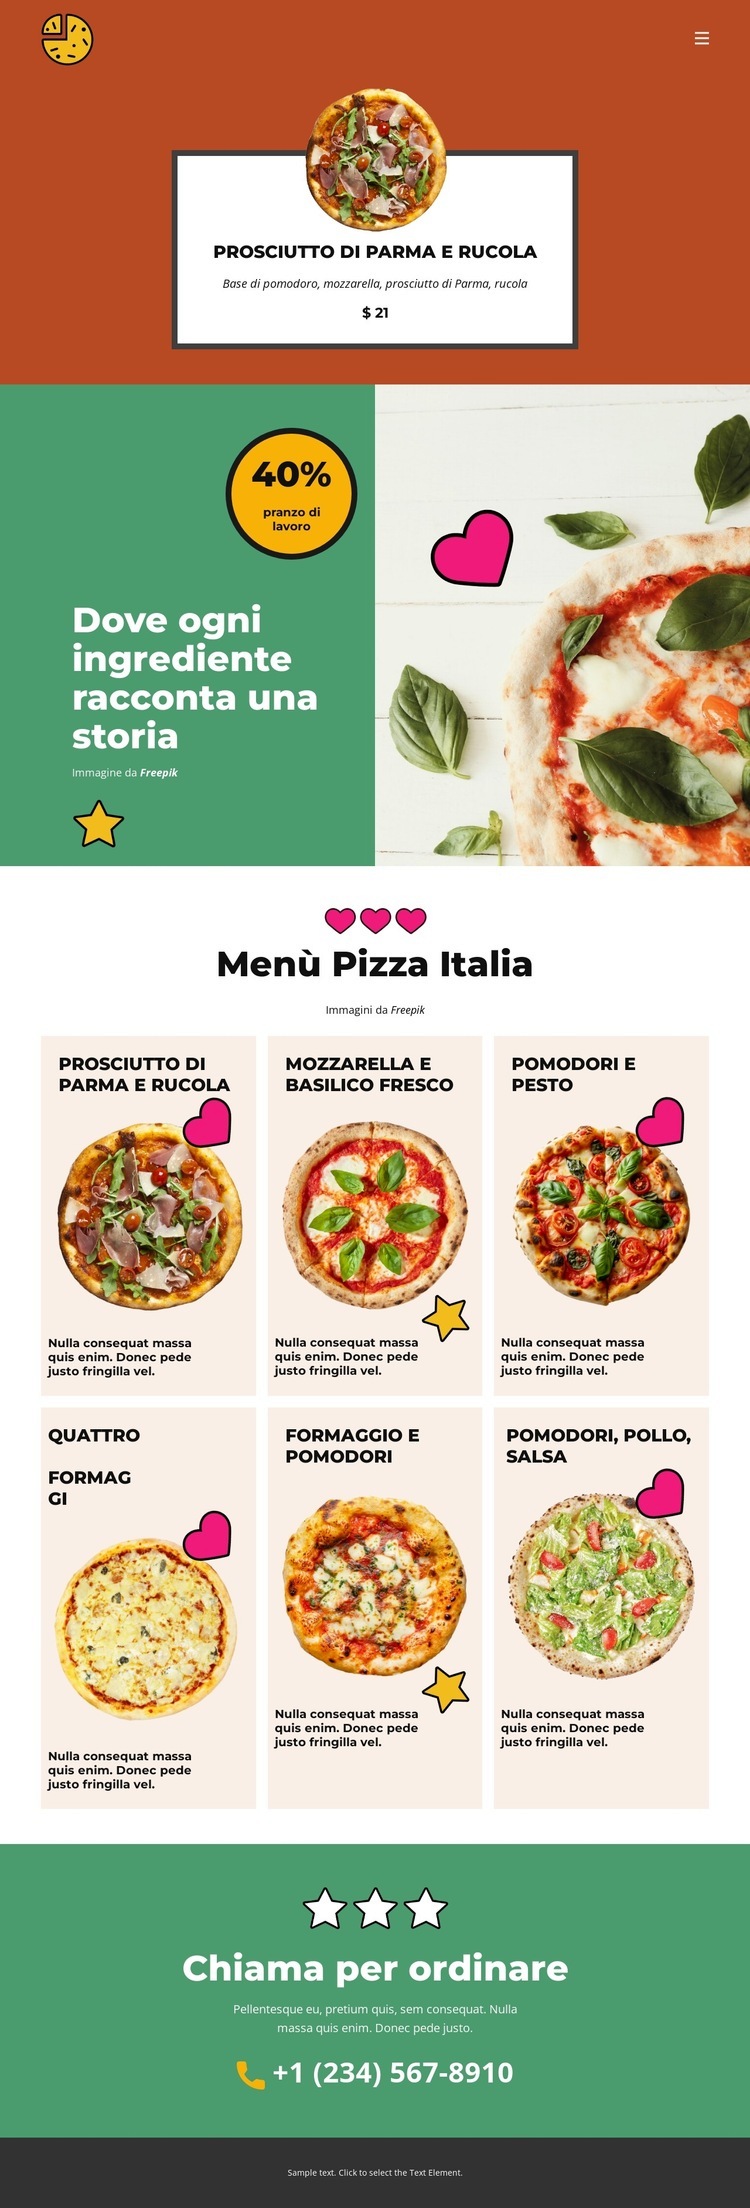 Fun Facts about Pizza Progettazione di siti web